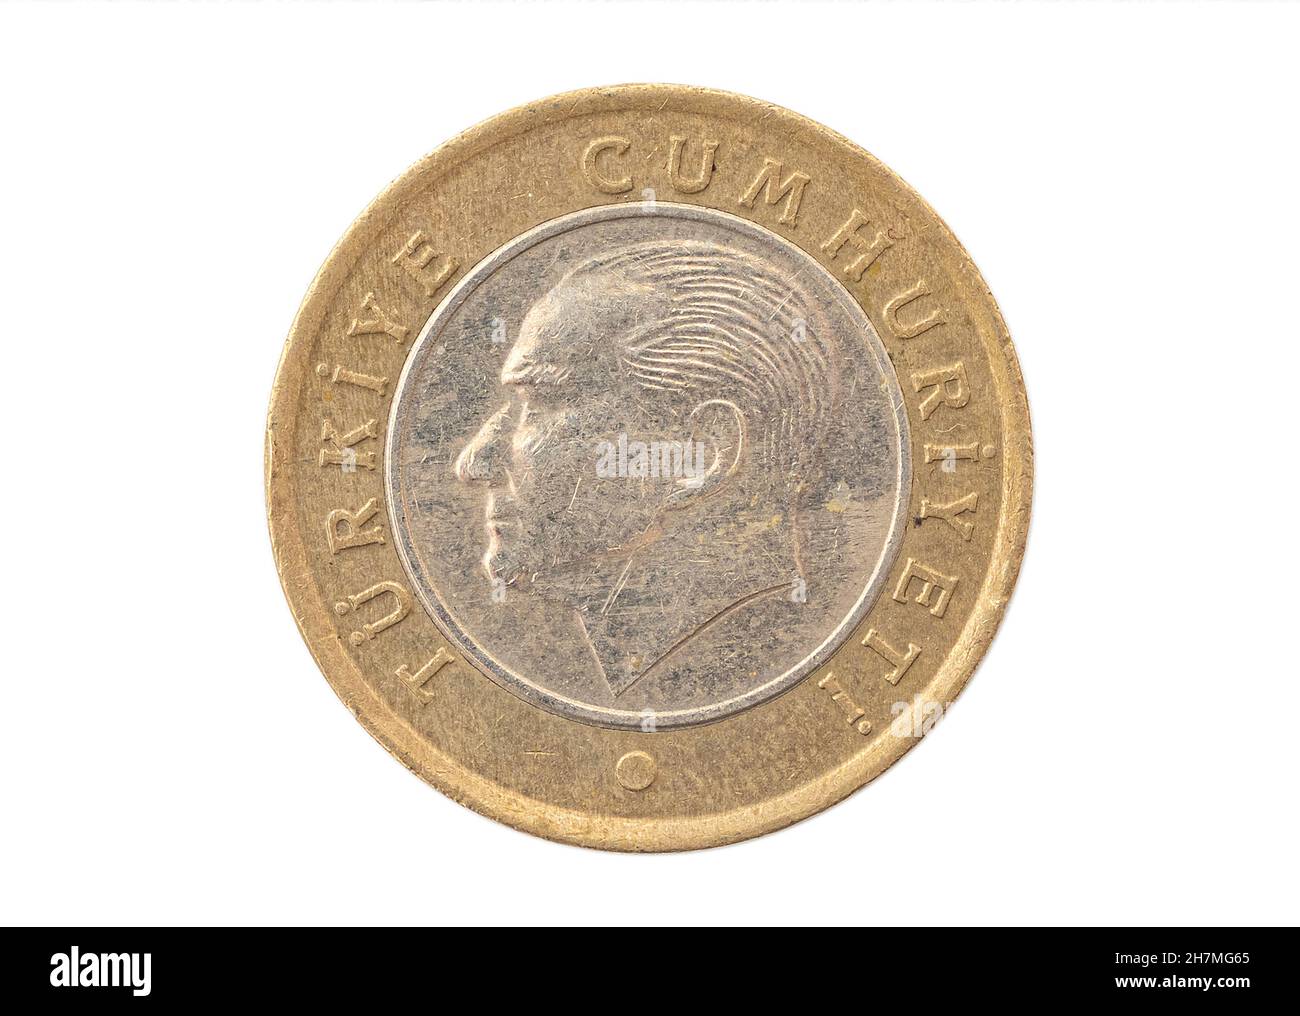 Türkische Lira, zerkratzte Eisenmünze isoliert auf Weiß. türkisches Geld mit Kemal Atatürk-Porträt. Stockfoto